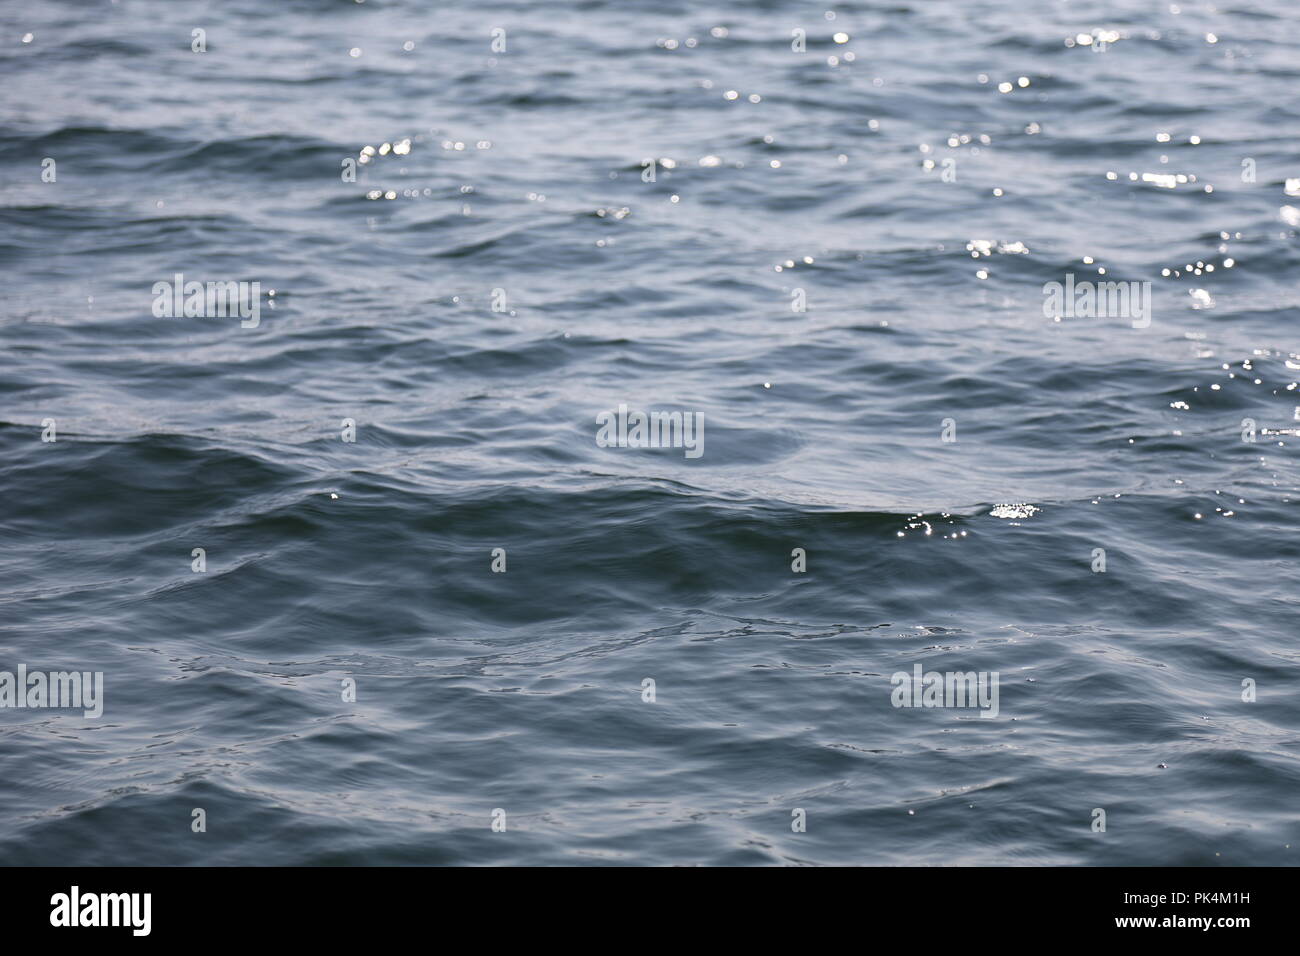 Dettaglio dell'oceano onde di superficie Foto Stock